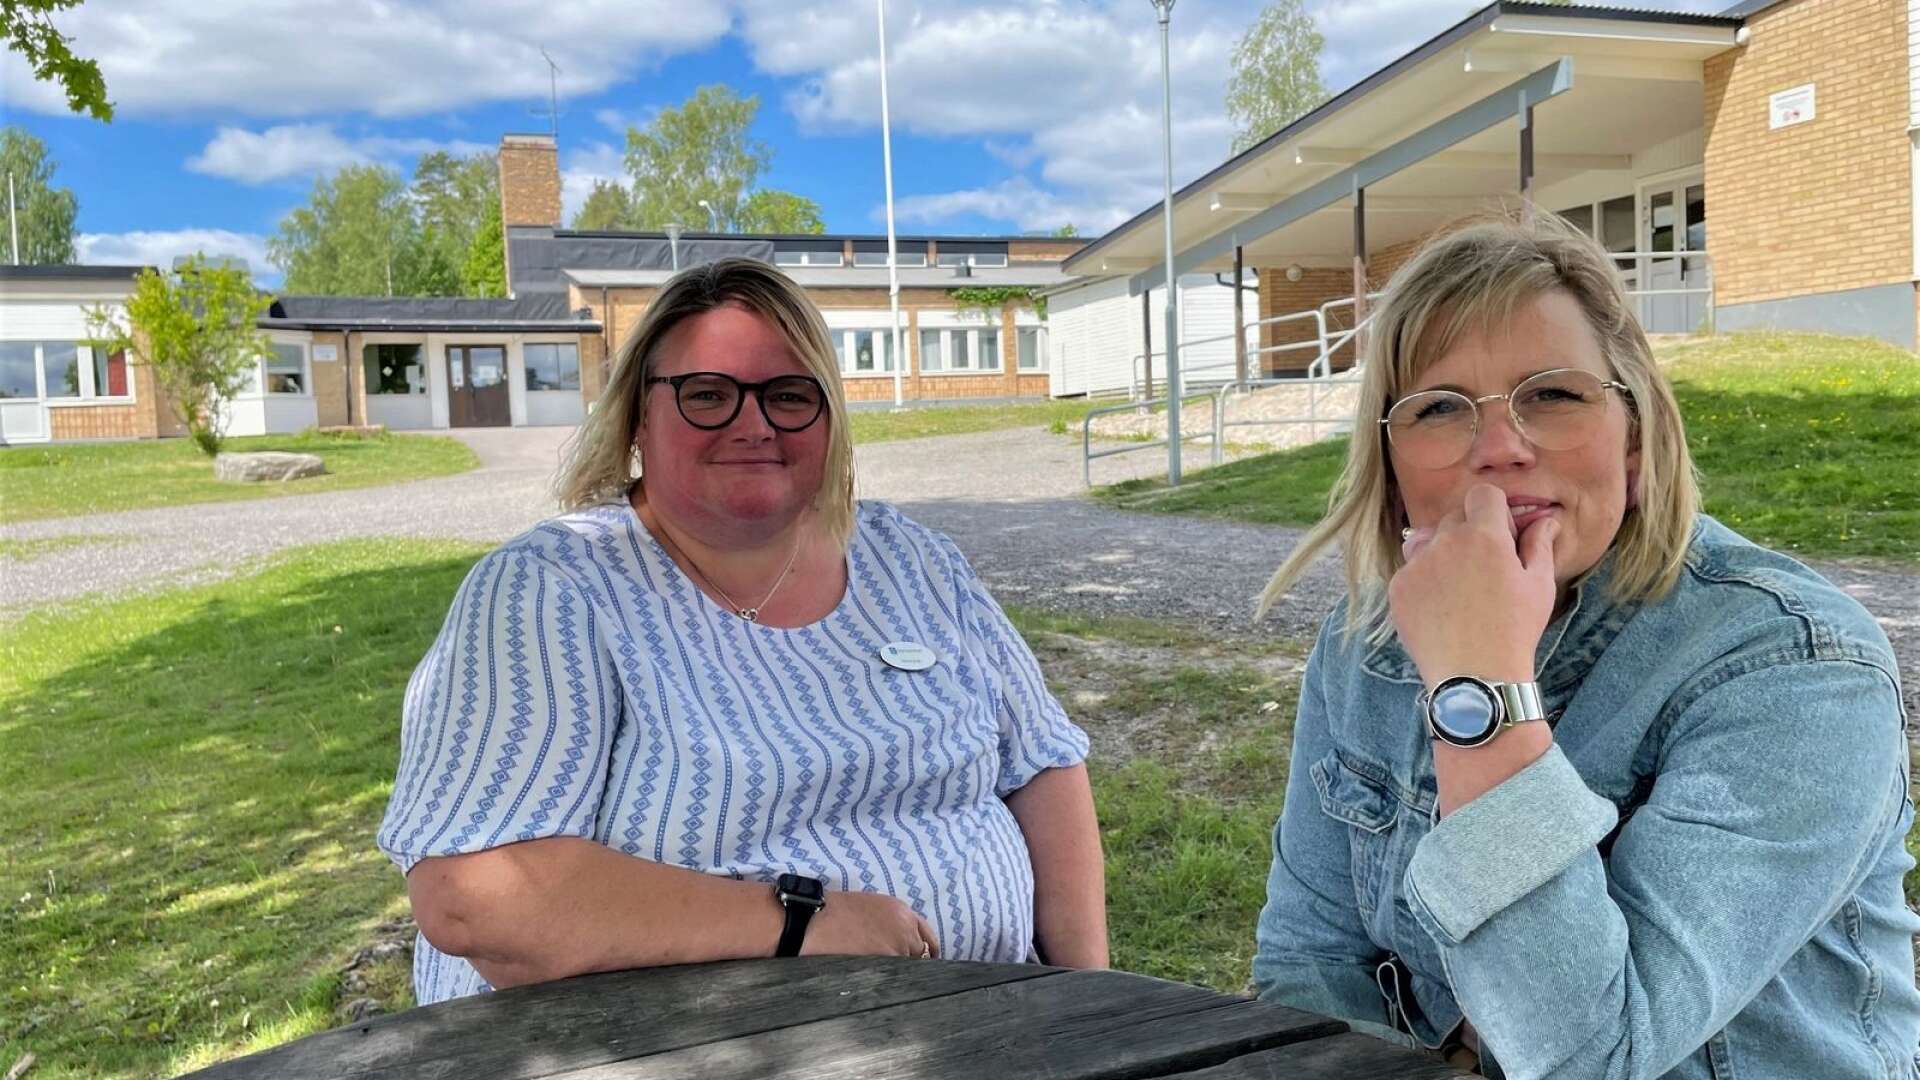 Veronica Stridh jobbar som lärare på Gärdesskolan, Sirill Karlsson är specialpedagog och båda är aktiva inom lärarfacket Sveriges lärare i Eda kommun. 